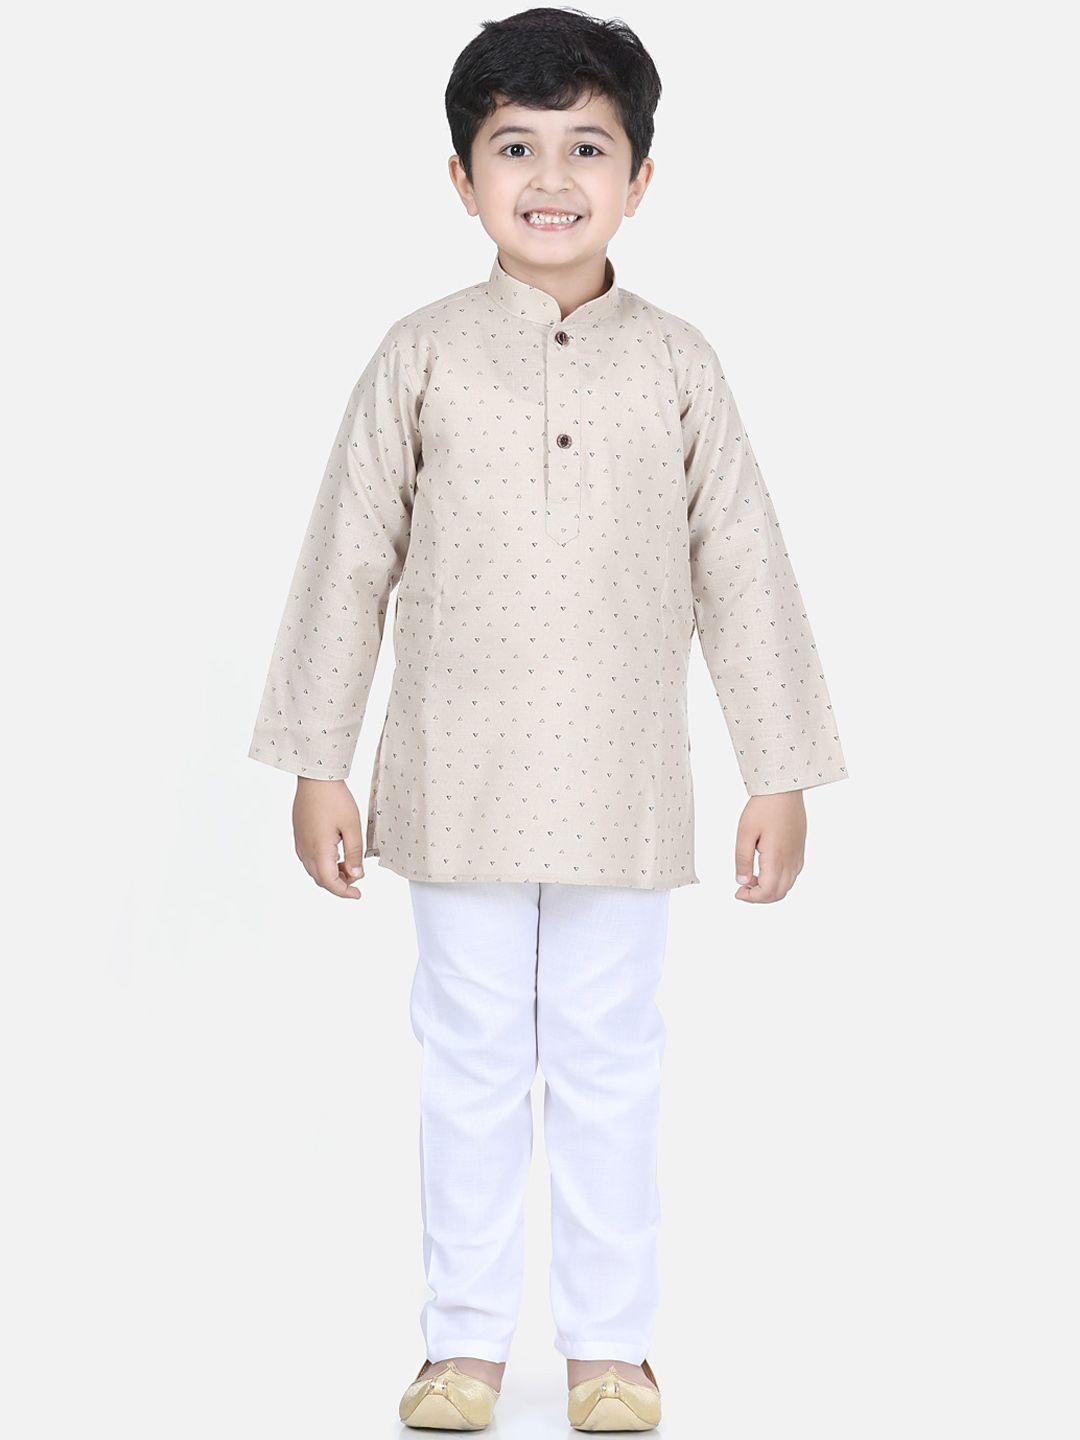 kidling boys beige & white printed kurta with pyjamas